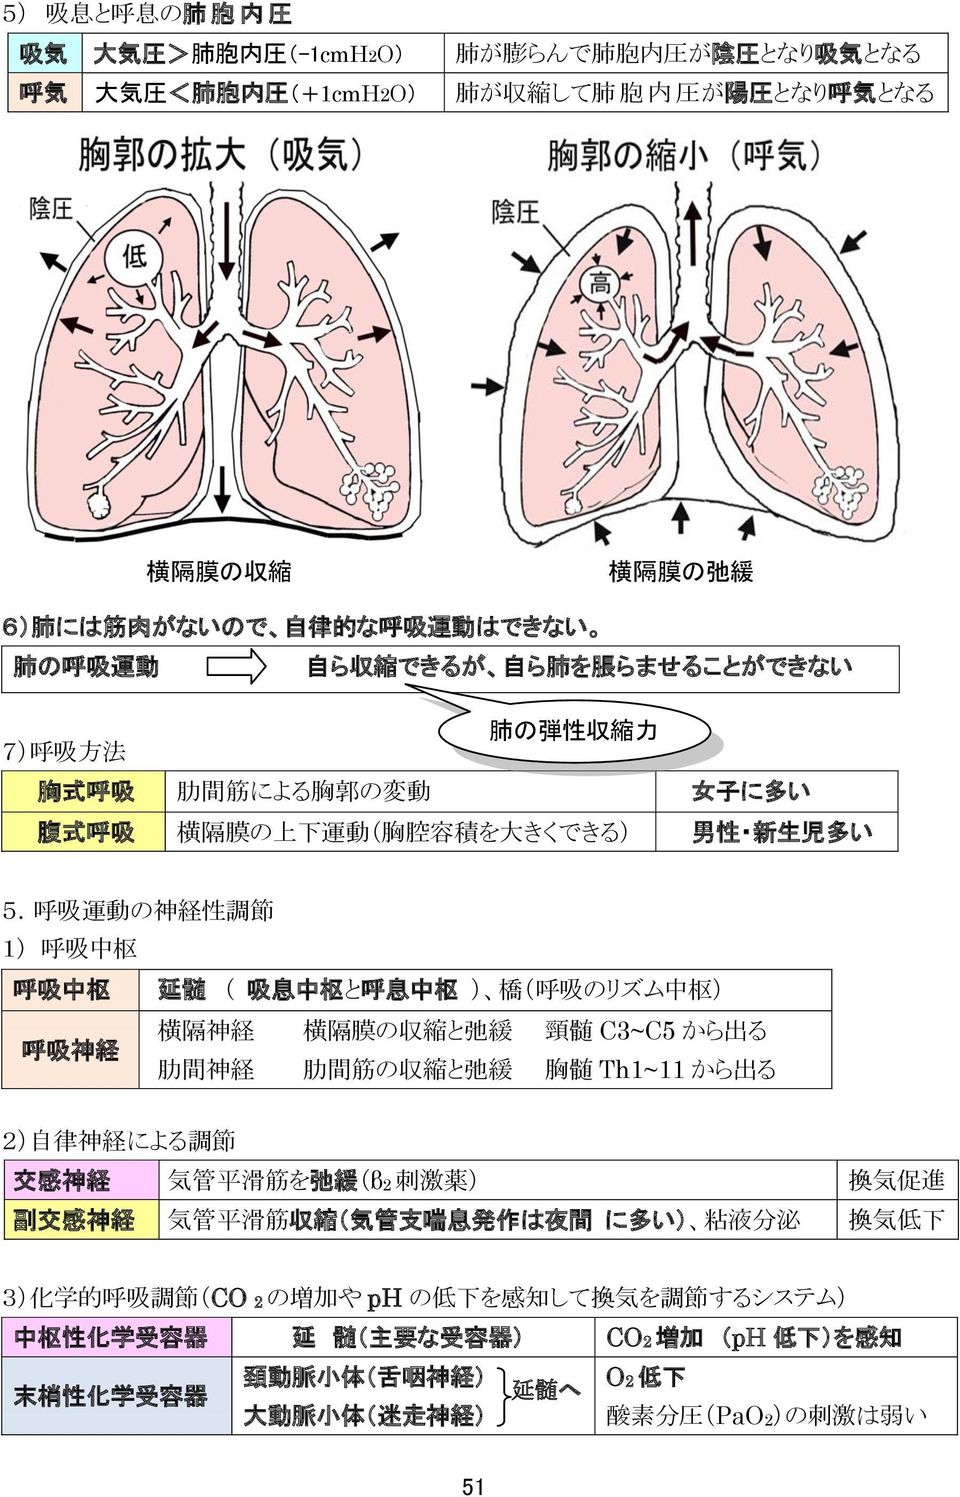 呼 吸 運 動 の 神 経 性 調 節 1) 呼 吸 中 枢 呼 吸 中 枢 延 髄 ( 吸 息 中 枢 と 呼 息 中 枢 ) 橋 ( 呼 吸 のリズム 中 枢 ) 横 隔 神 経 横 隔 膜 の 収 縮 と 弛 緩 頸 髄 C3~C5 から 出 る 呼 吸 神 経 肋 間 神 経 肋 間 筋 の 収 縮 と 弛 緩 胸 髄 Th1~11 から 出 る 2) 自 律 神 経 による 調 節 交